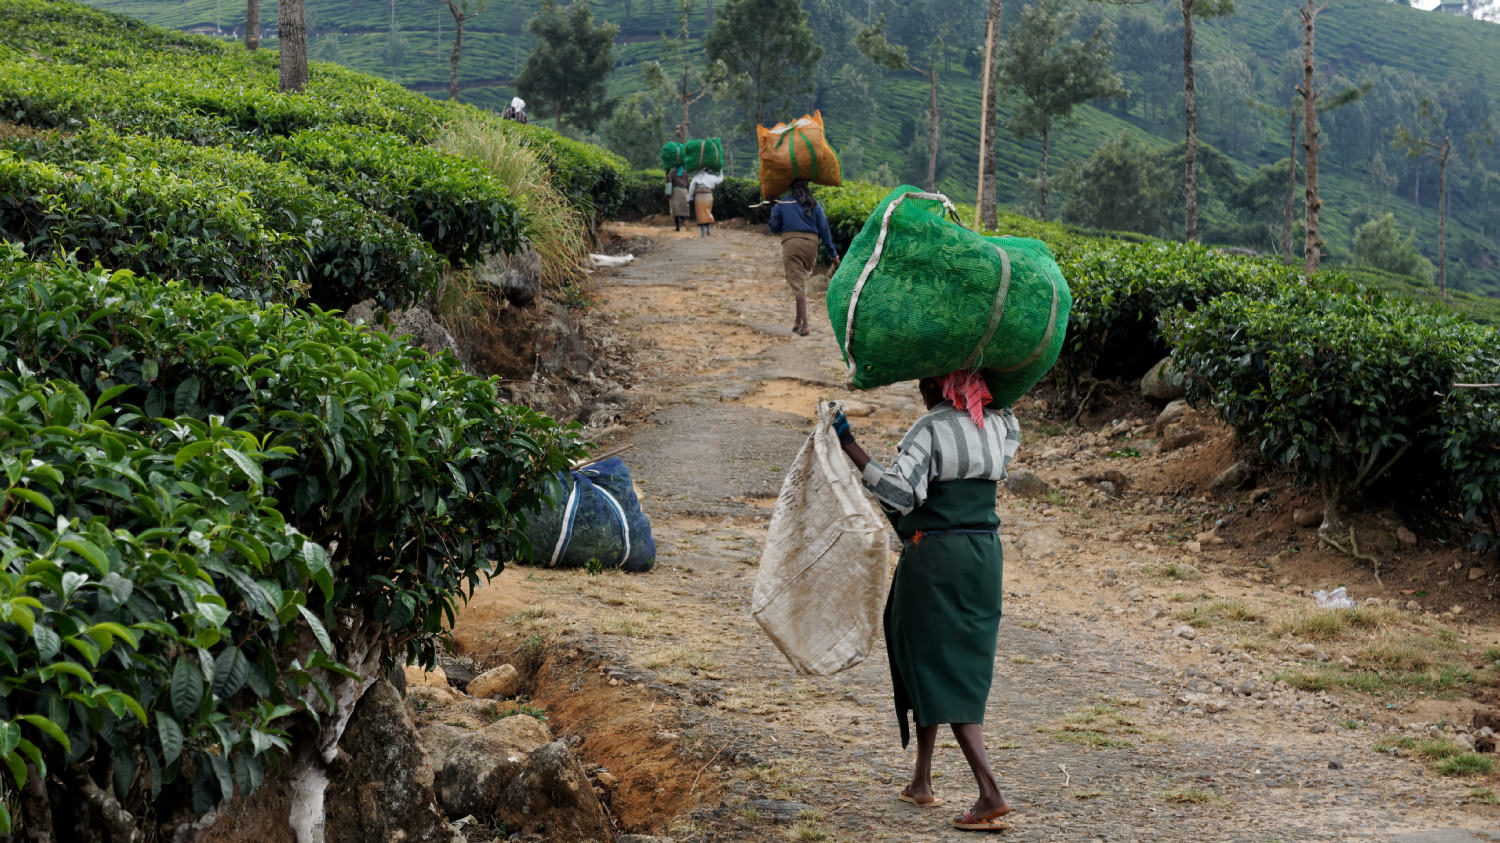 Μεταφέροντας τα φύλλα τσαγιού. Munnar, Kerala